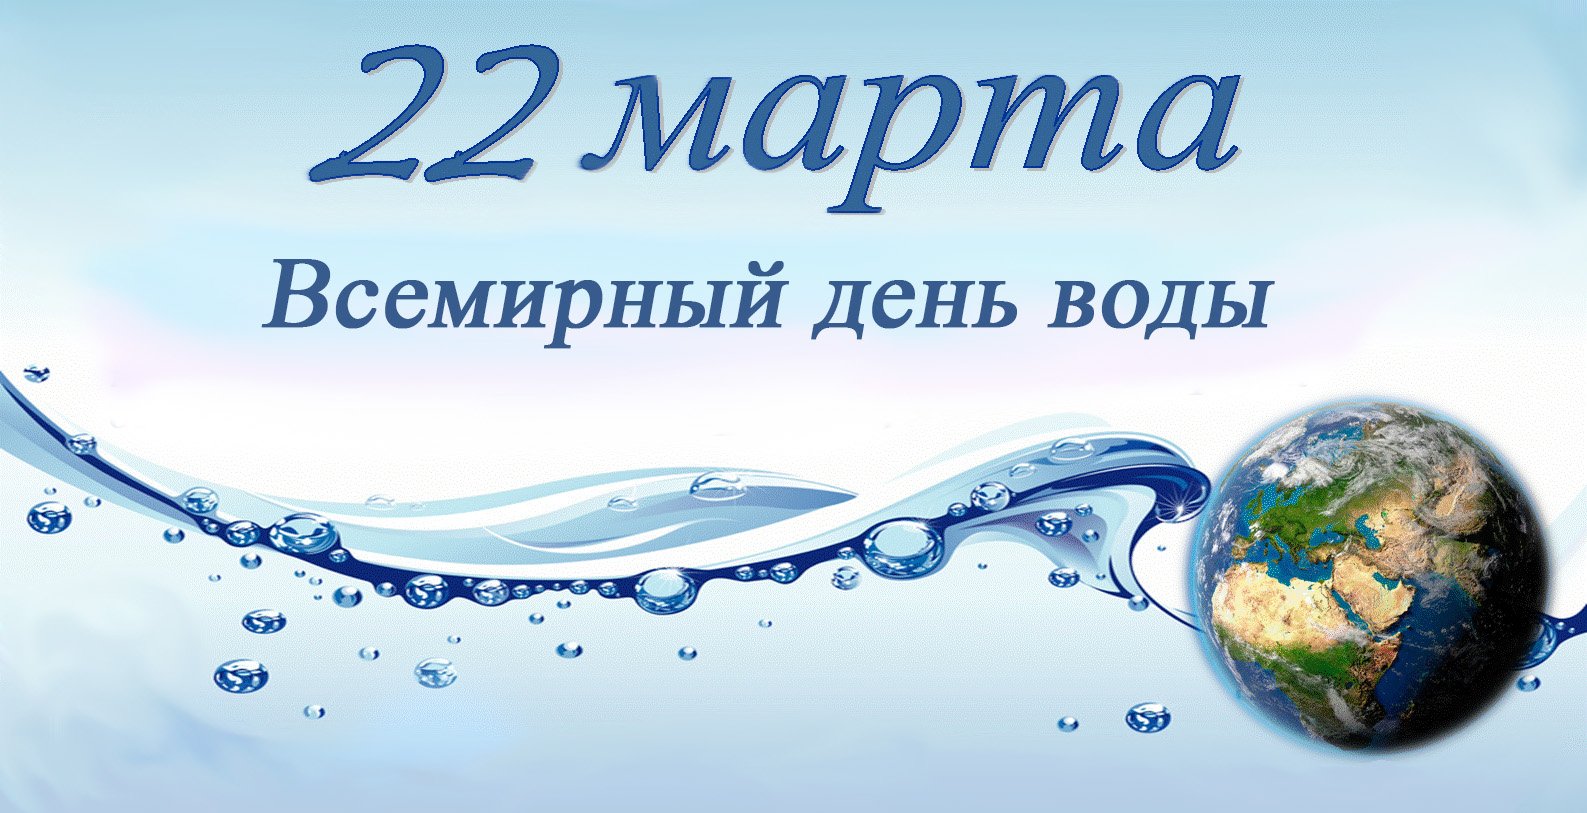 Водные ресурсы россии старшая группа. Всемирный день воды. День водных ресурсов. Всемирный день водных ресурсов.